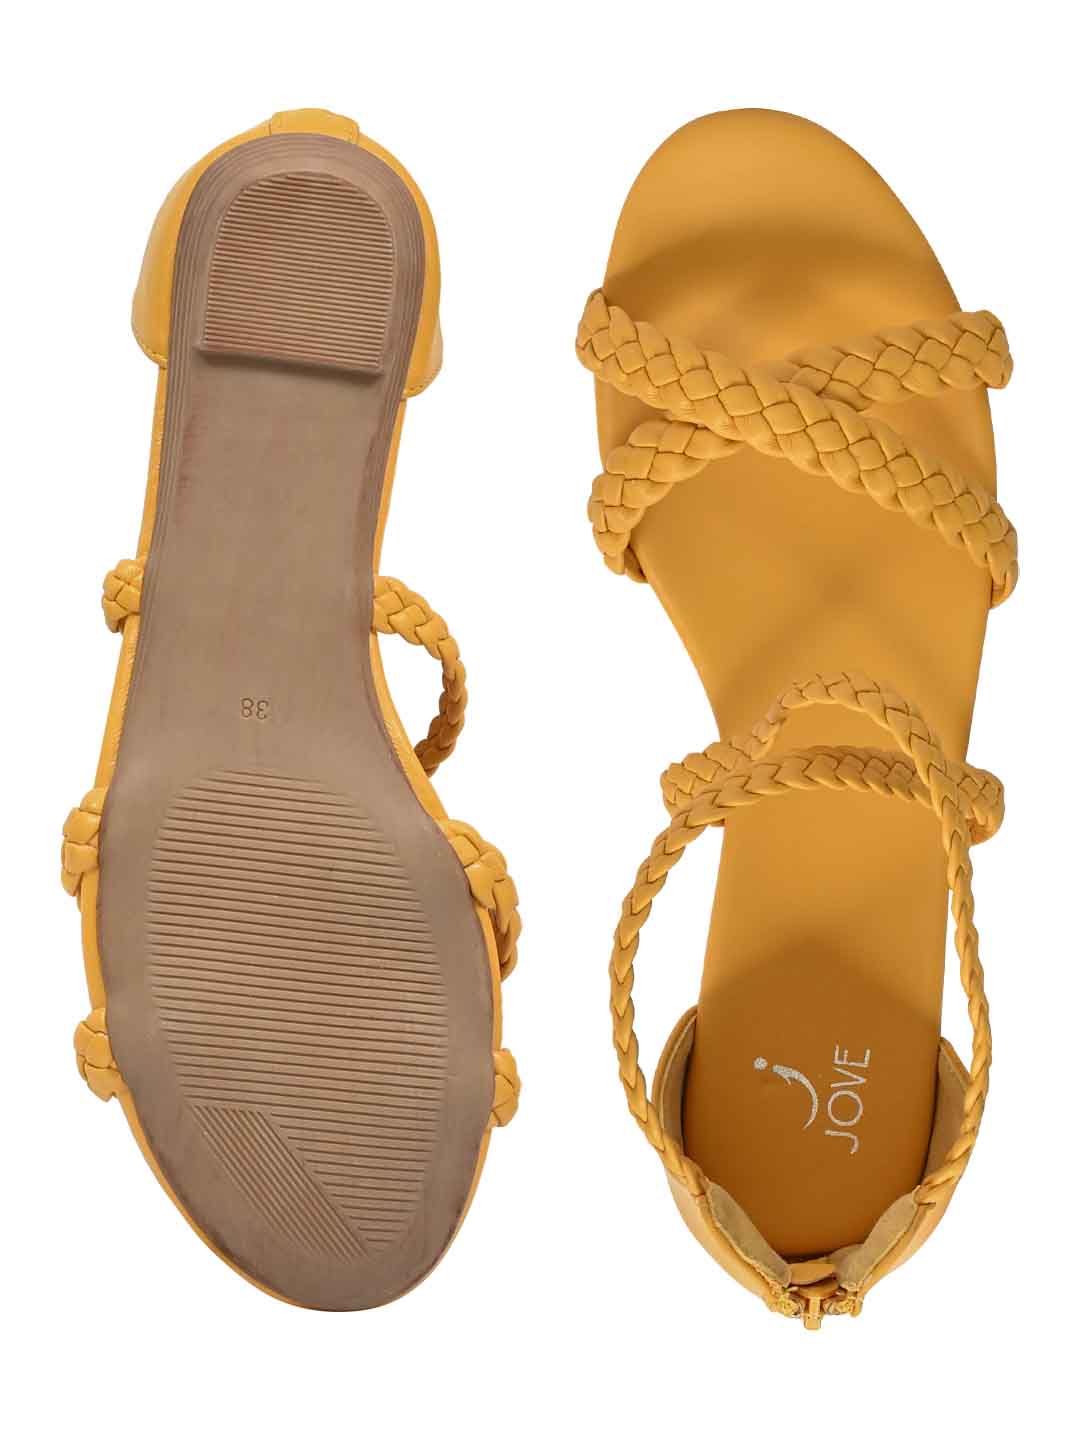 Footwear, Women Footwear, Mustard Sandals